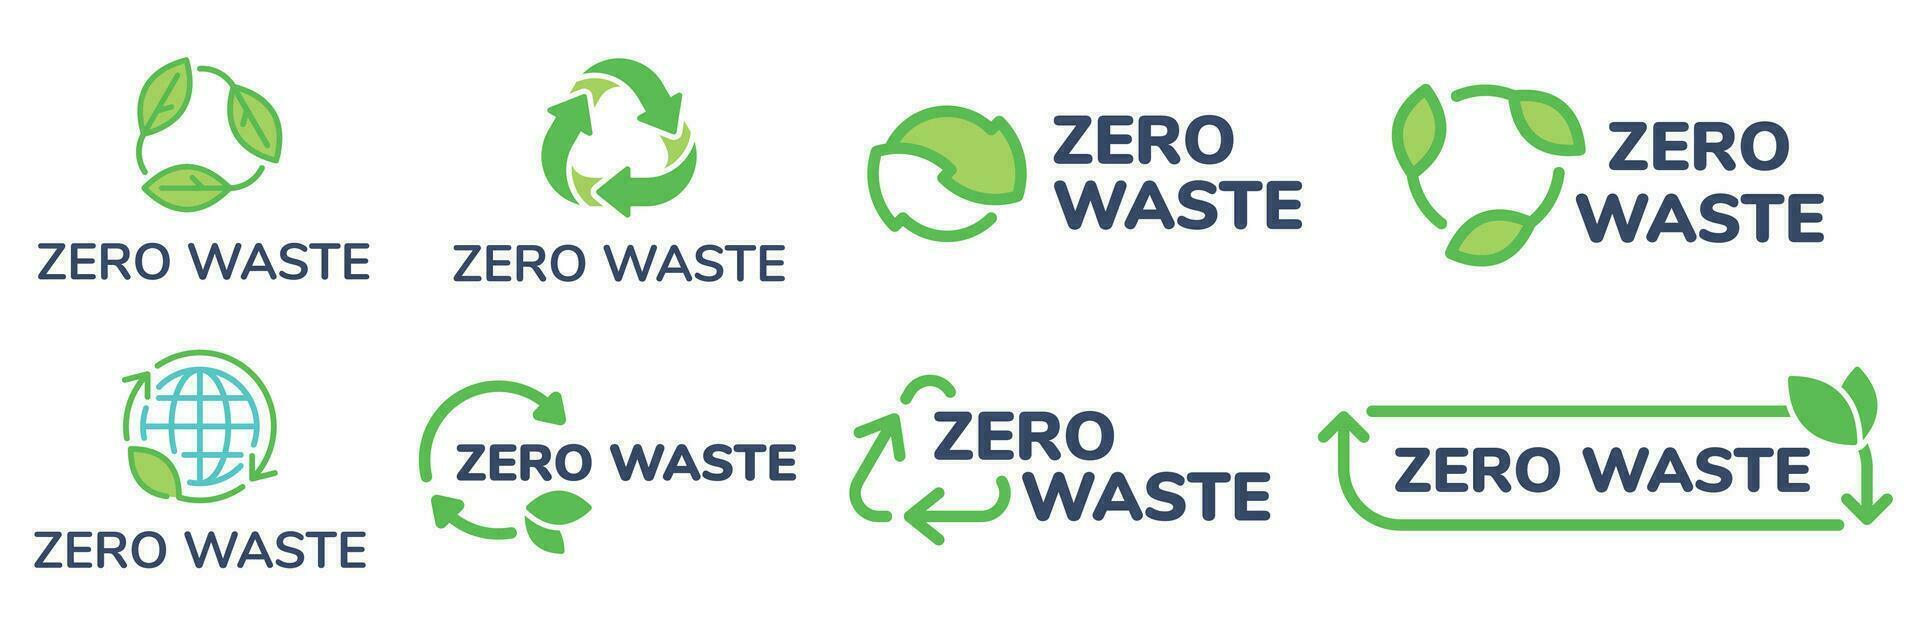 zero rifiuto etichette. verde eco amichevole etichetta, ridurre rifiuti e riciclare icona con pianta le foglie vettore impostato